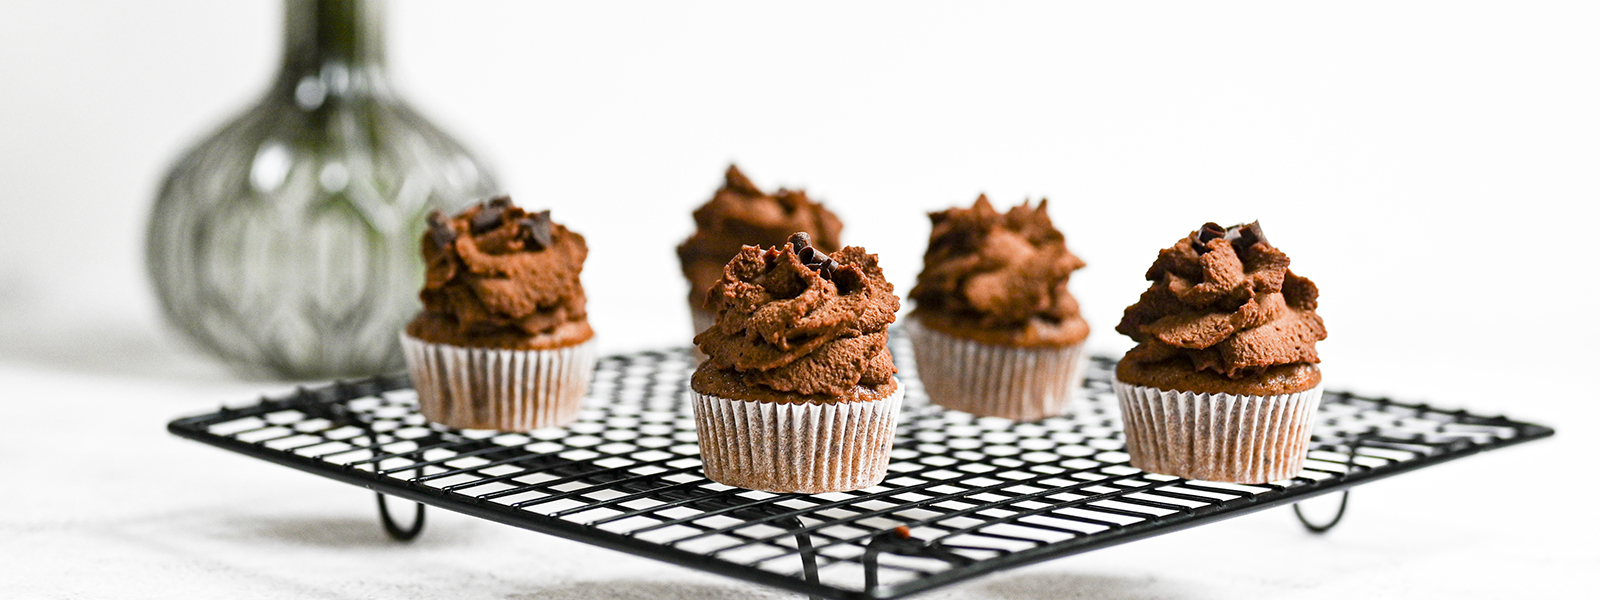 Ořechové cupcakes s čokoládovým krémem